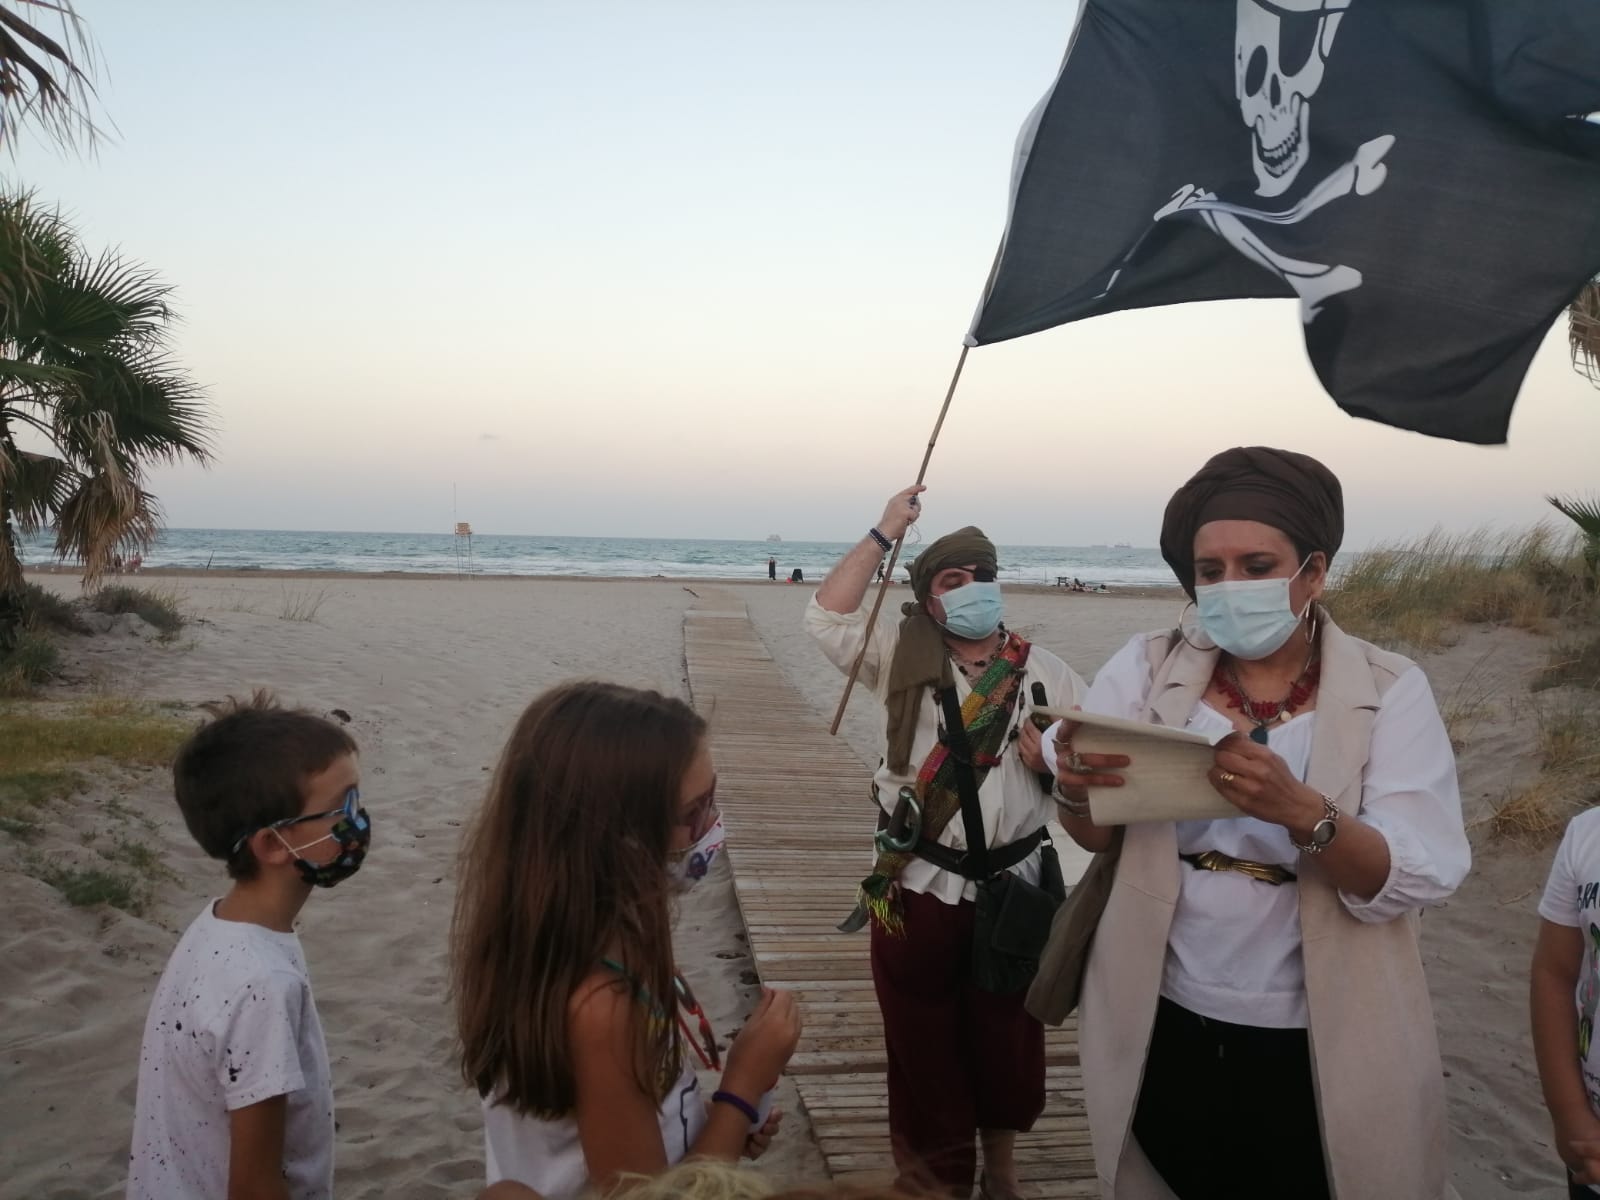 Dos personas vestidas de piratas teen una carta y enarbolan unabandera pirata en un paisaje de playa con dos niños mirando